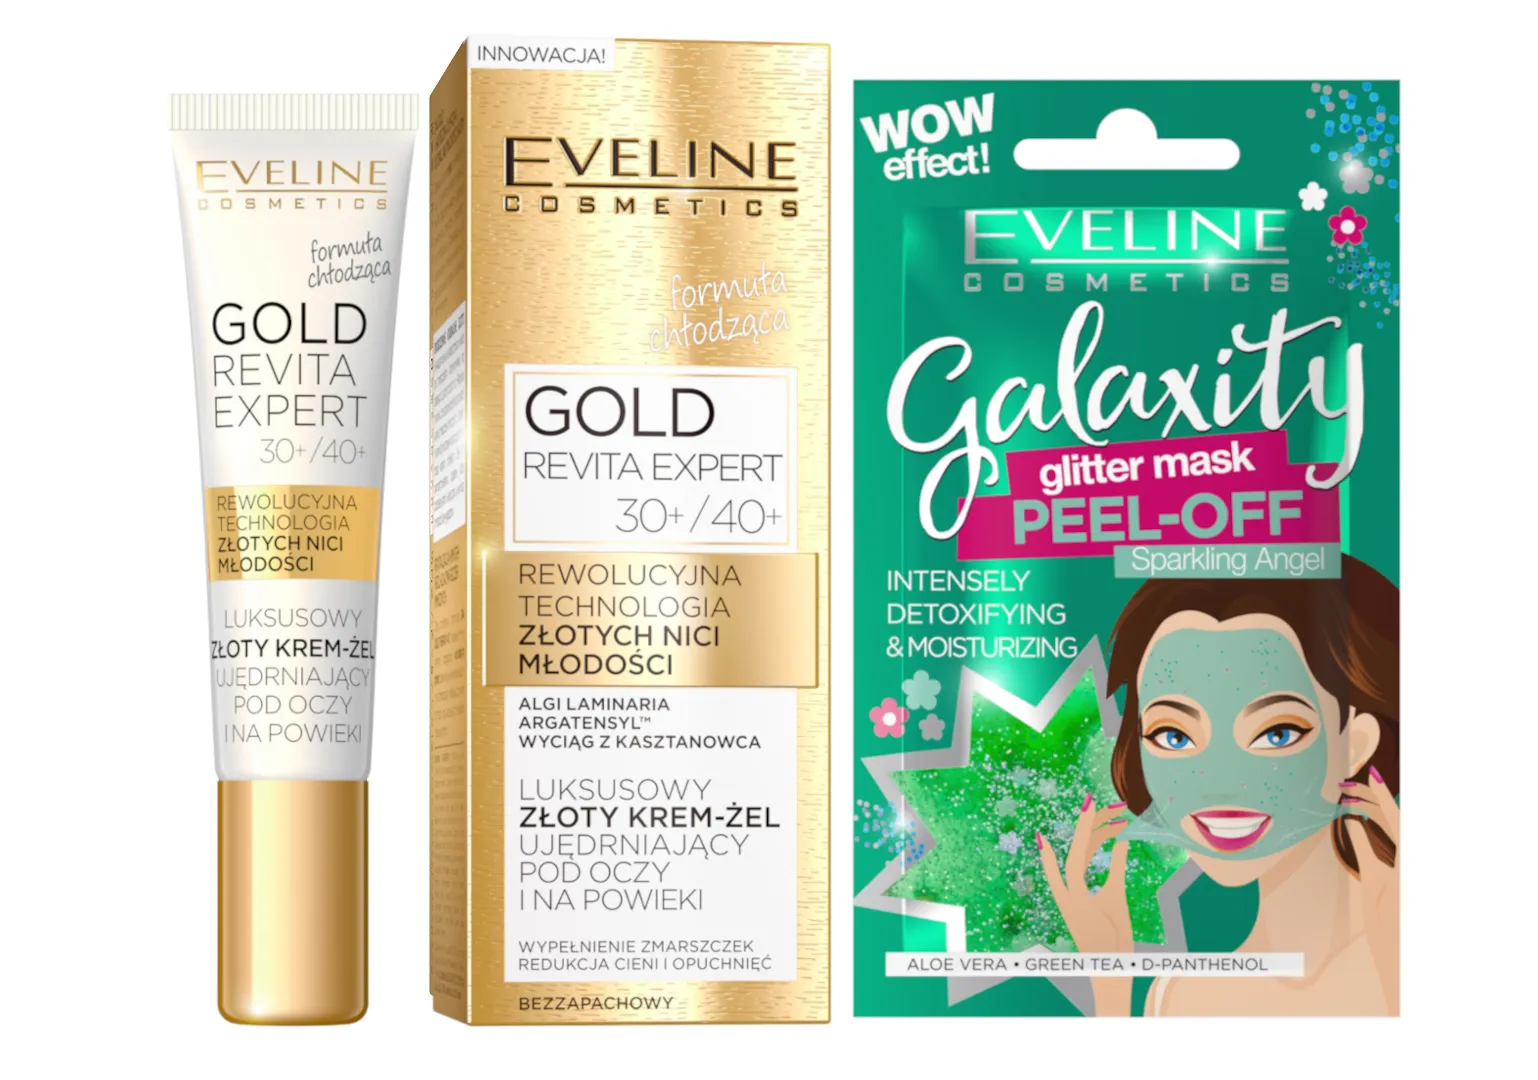 Eveline Cosmetics Gold Revita Expert luksusowy złoty krem żel ujędrniający pod oczy i na powieki 30+/40+, 15 ml+ Eveline Cosmetics Detoksykująco-nawilżająca maseczka peel-off z połyskującymi drobinkami, 10 ml